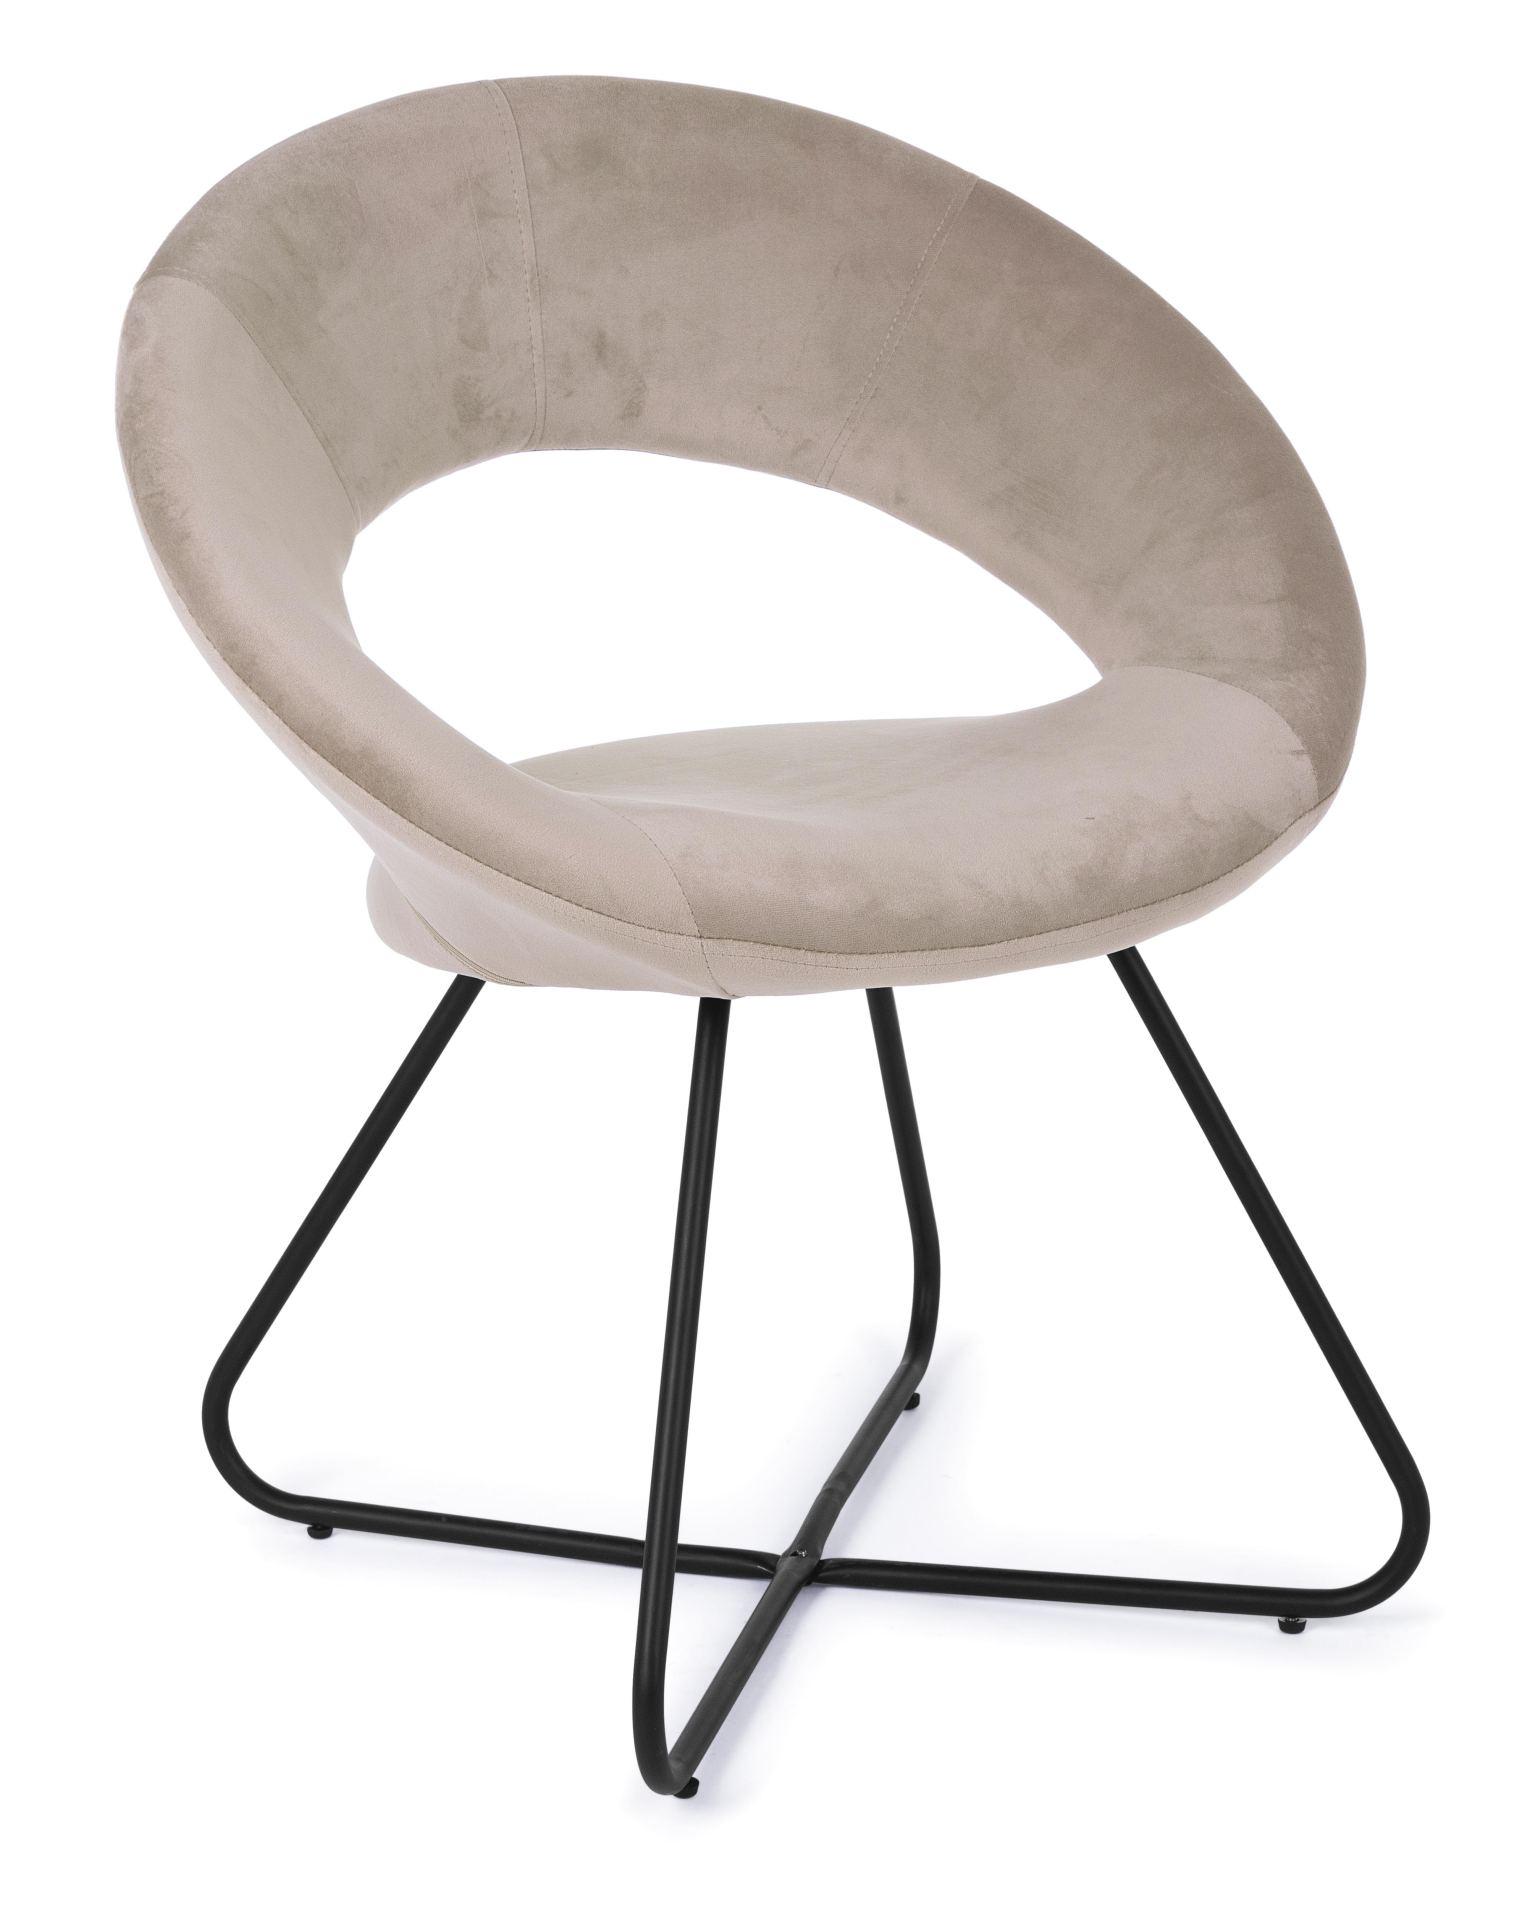 Der Sessel Vanity überzeugt mit seinem modernen Design. Gefertigt wurde er aus Stoff in Samt-Optik, welcher einen Taupe Farbton besitzt. Das Gestell ist aus Metall und hat eine schwarze Farbe. Der Sessel besitzt eine Sitzhöhe von 49 cm. Die Breite beträgt